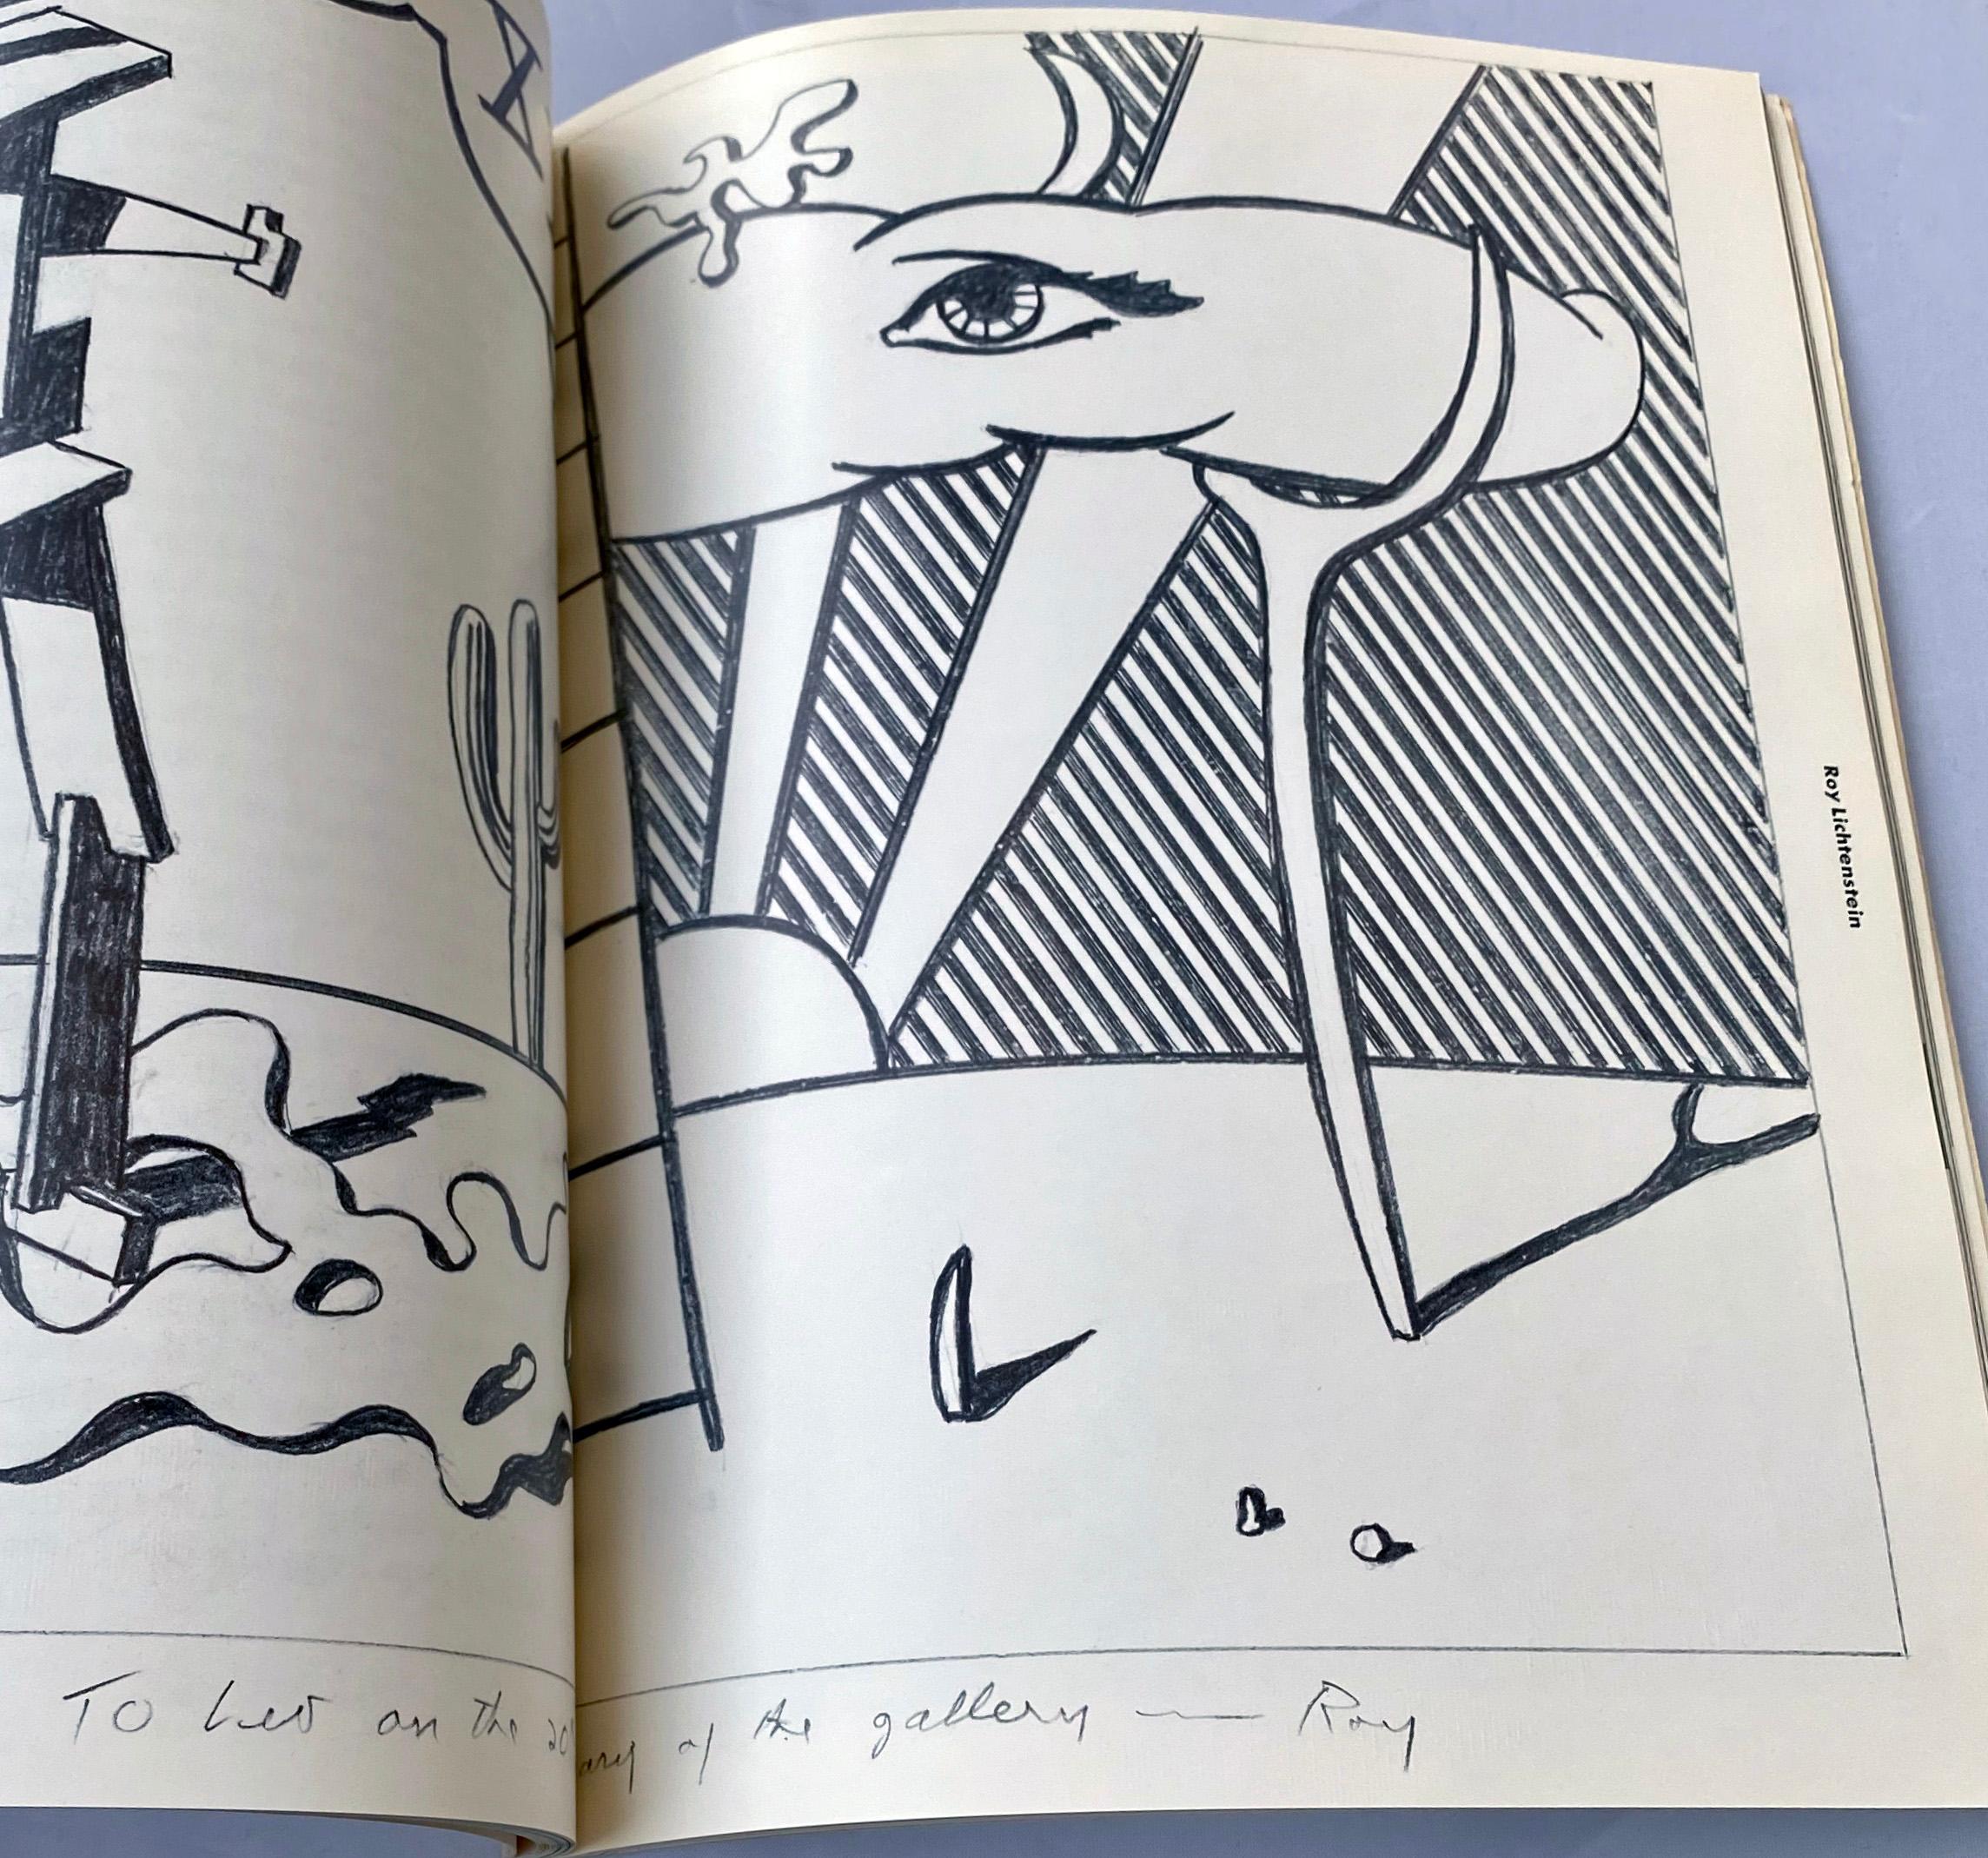 Leo Castelli : vingt ans
Galerie Leo Castelli, New York, 1977 
Édité par Susan Brundage et Janelle Reiring
Catalogue à couverture souple
OCLC : 9830954

Andy Warhol, couverture des années 1970, 